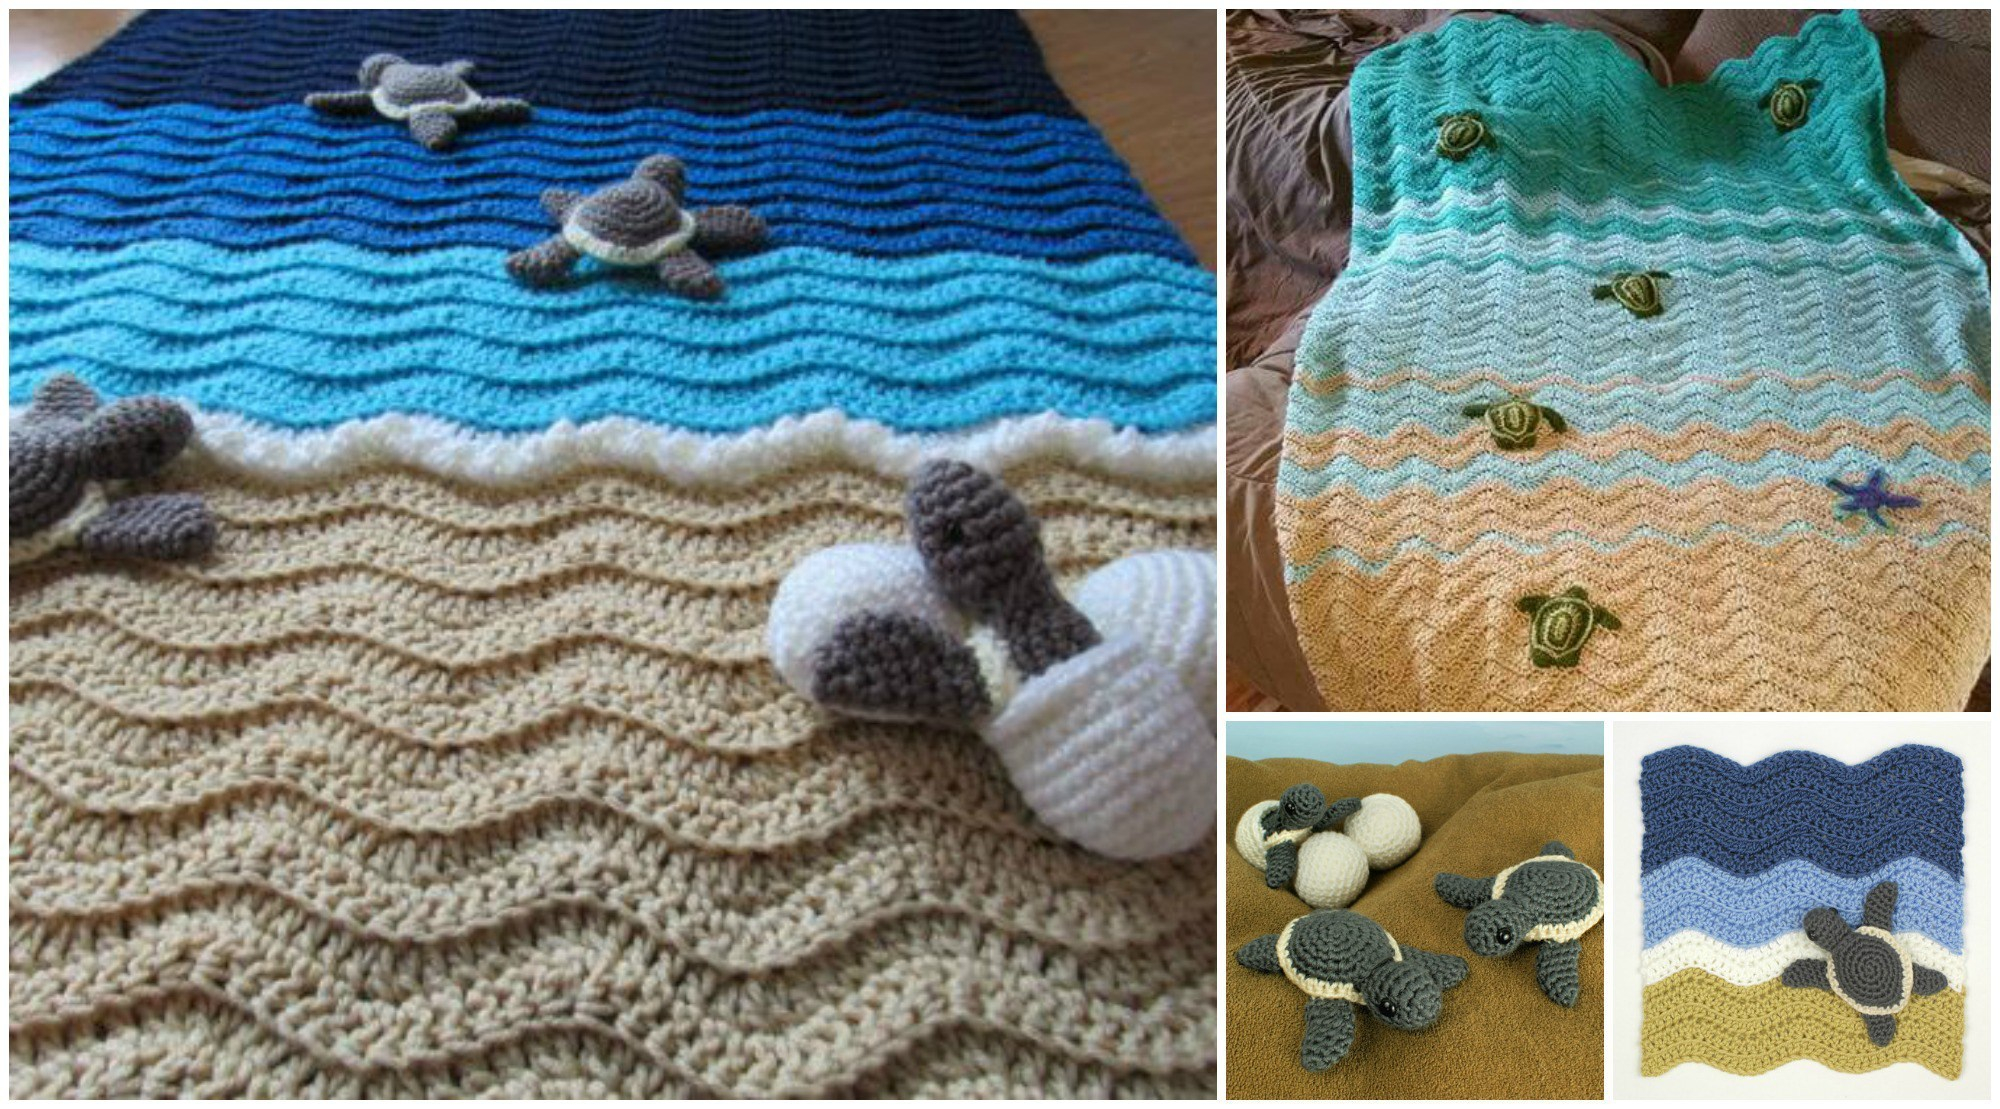 Crochet Monkey Blanket Pattern Crochet Turtle Beach Blanket Pretty Ideas Monkey Ba Pattern